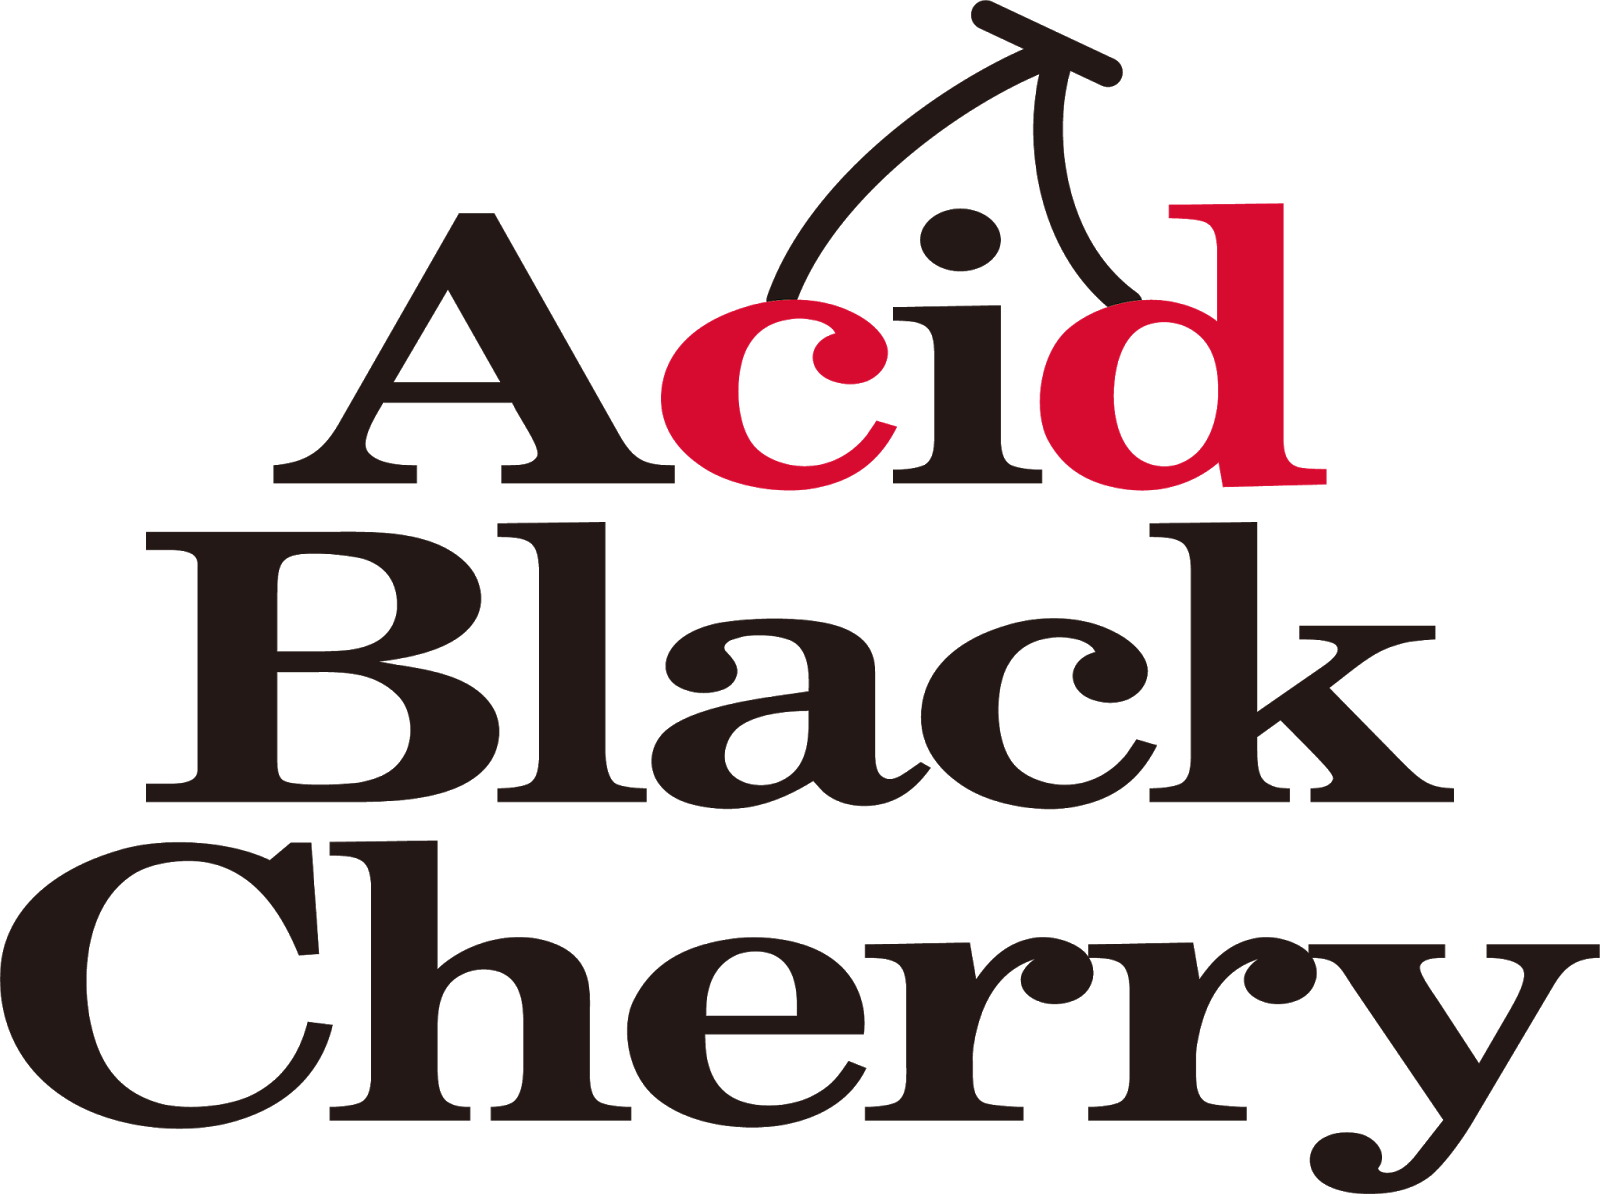 Logodol 全てが高画質 背景透過なアーティストのロゴをお届けするブログ Acid Black Cherry の高画質透過ロゴ５種 キスマークのロゴもあるよ